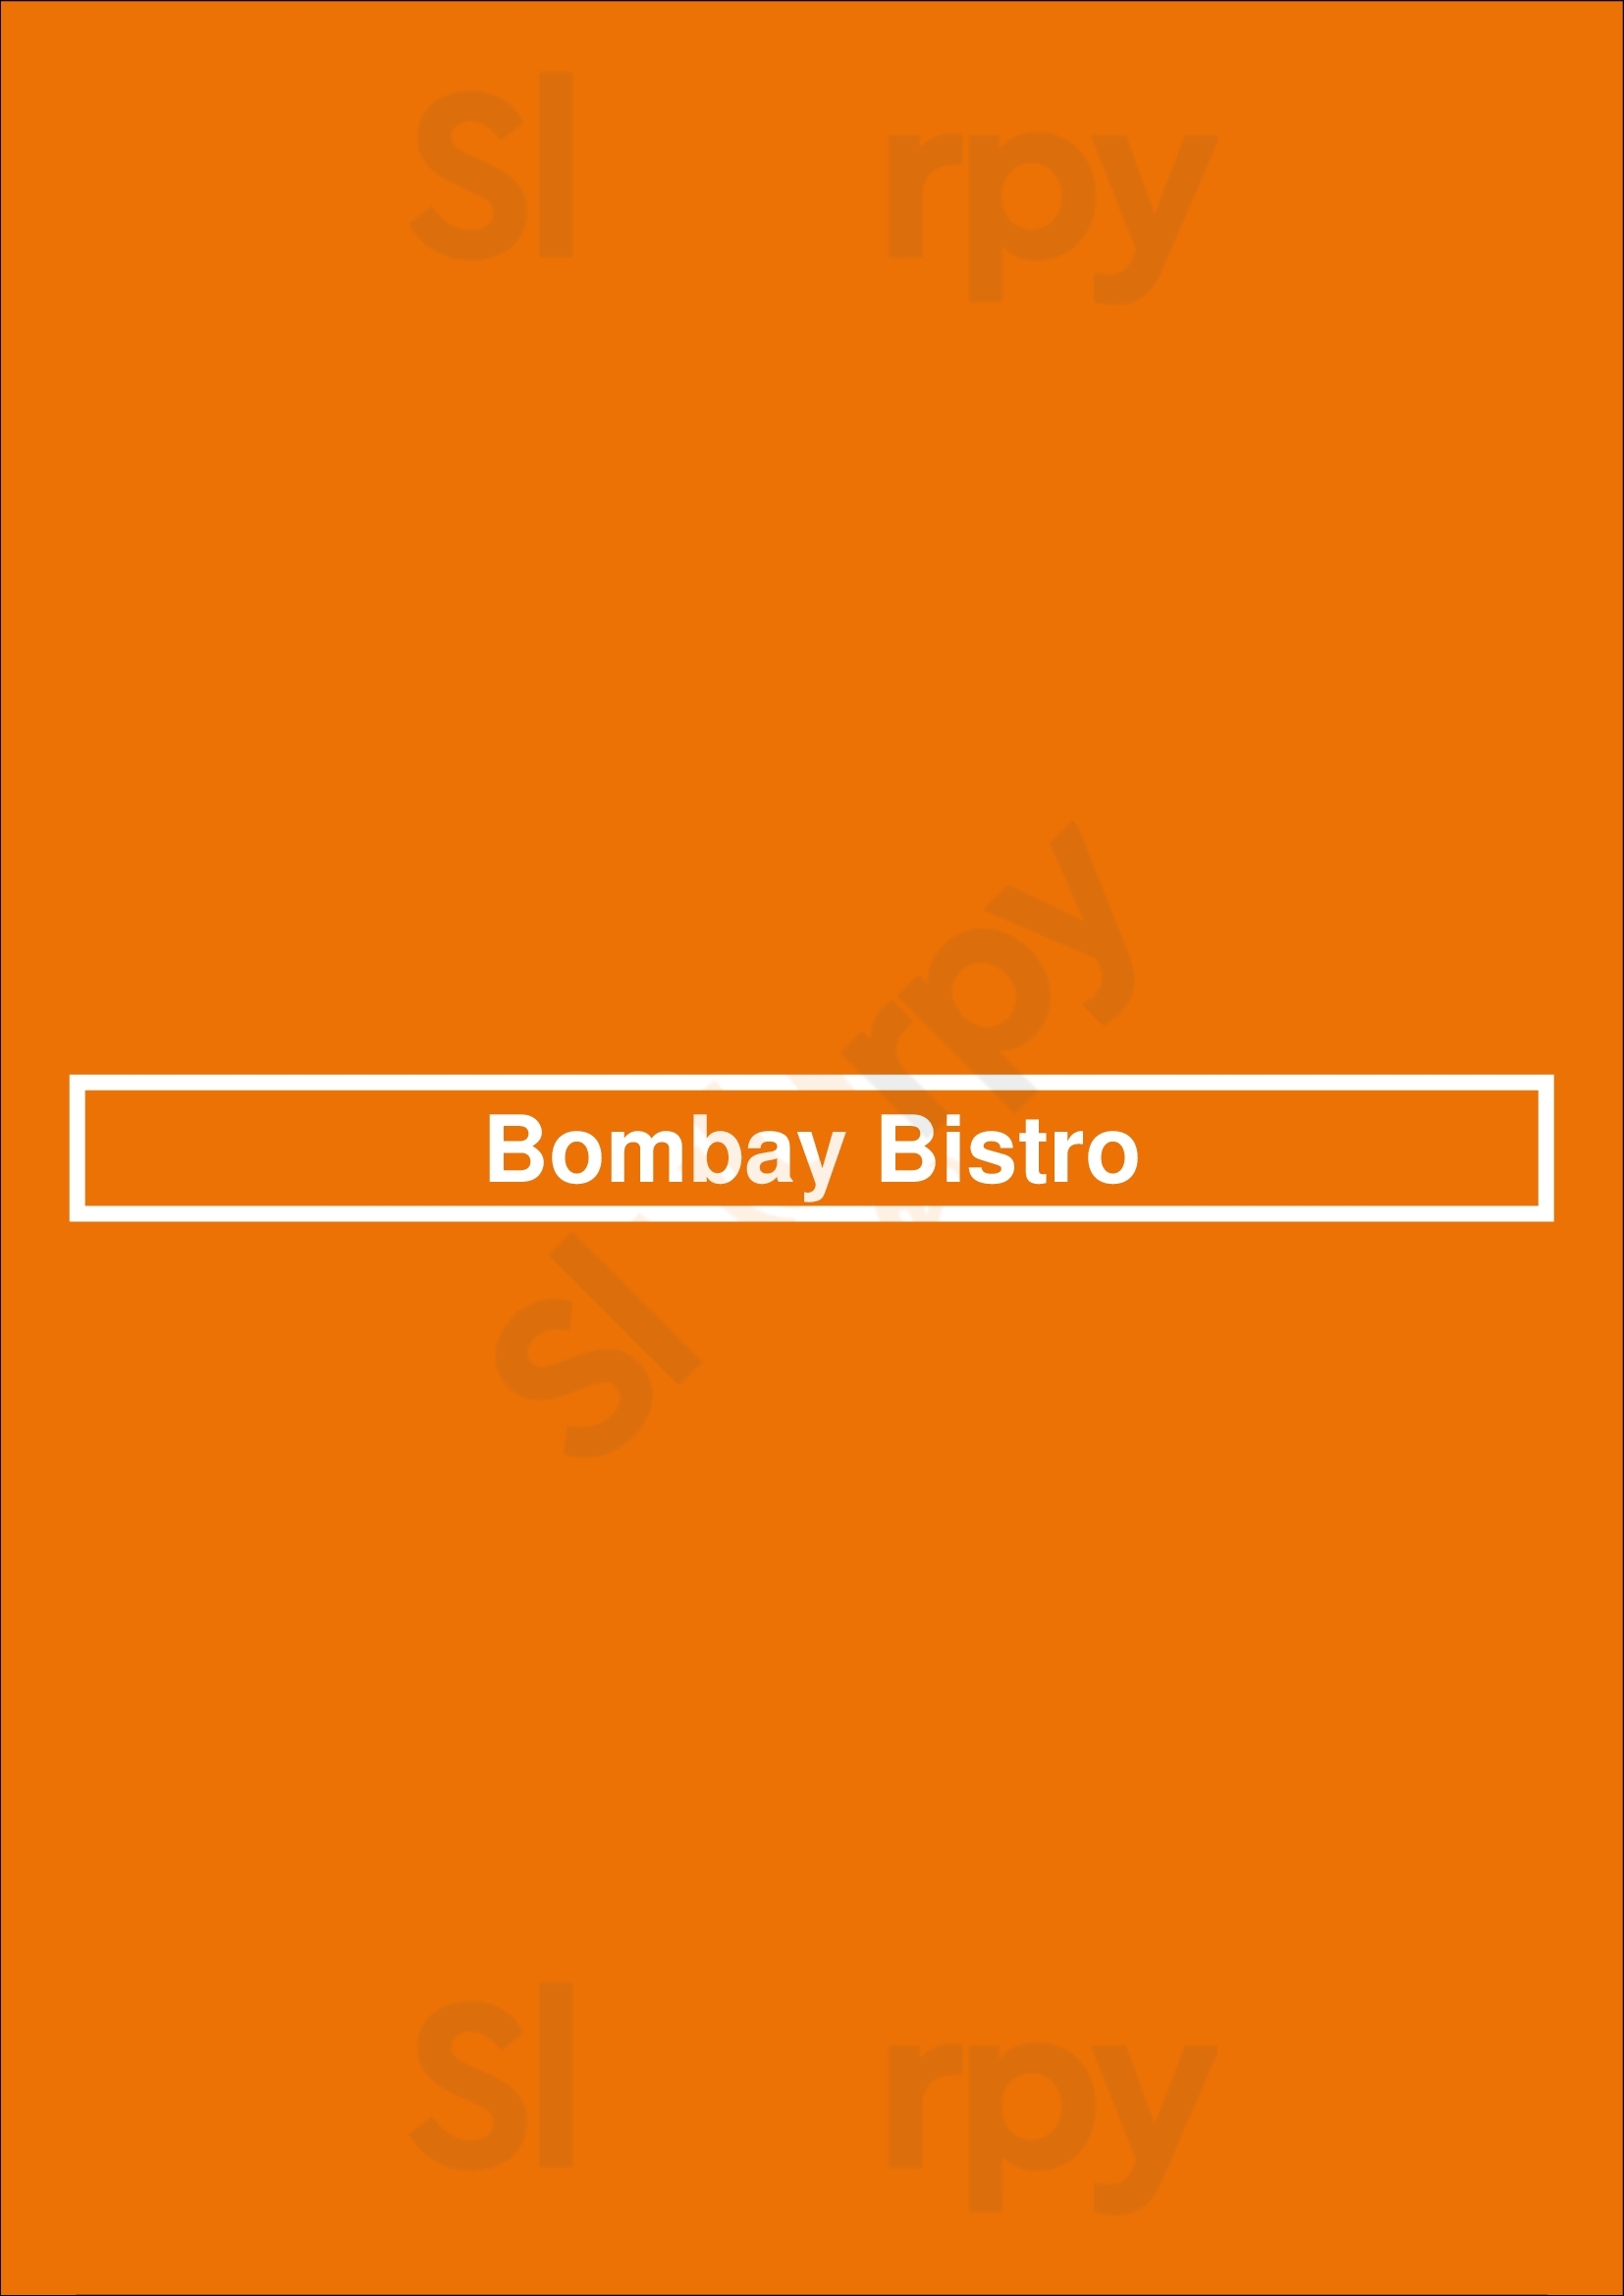 Bombay Bistro London Menu - 1